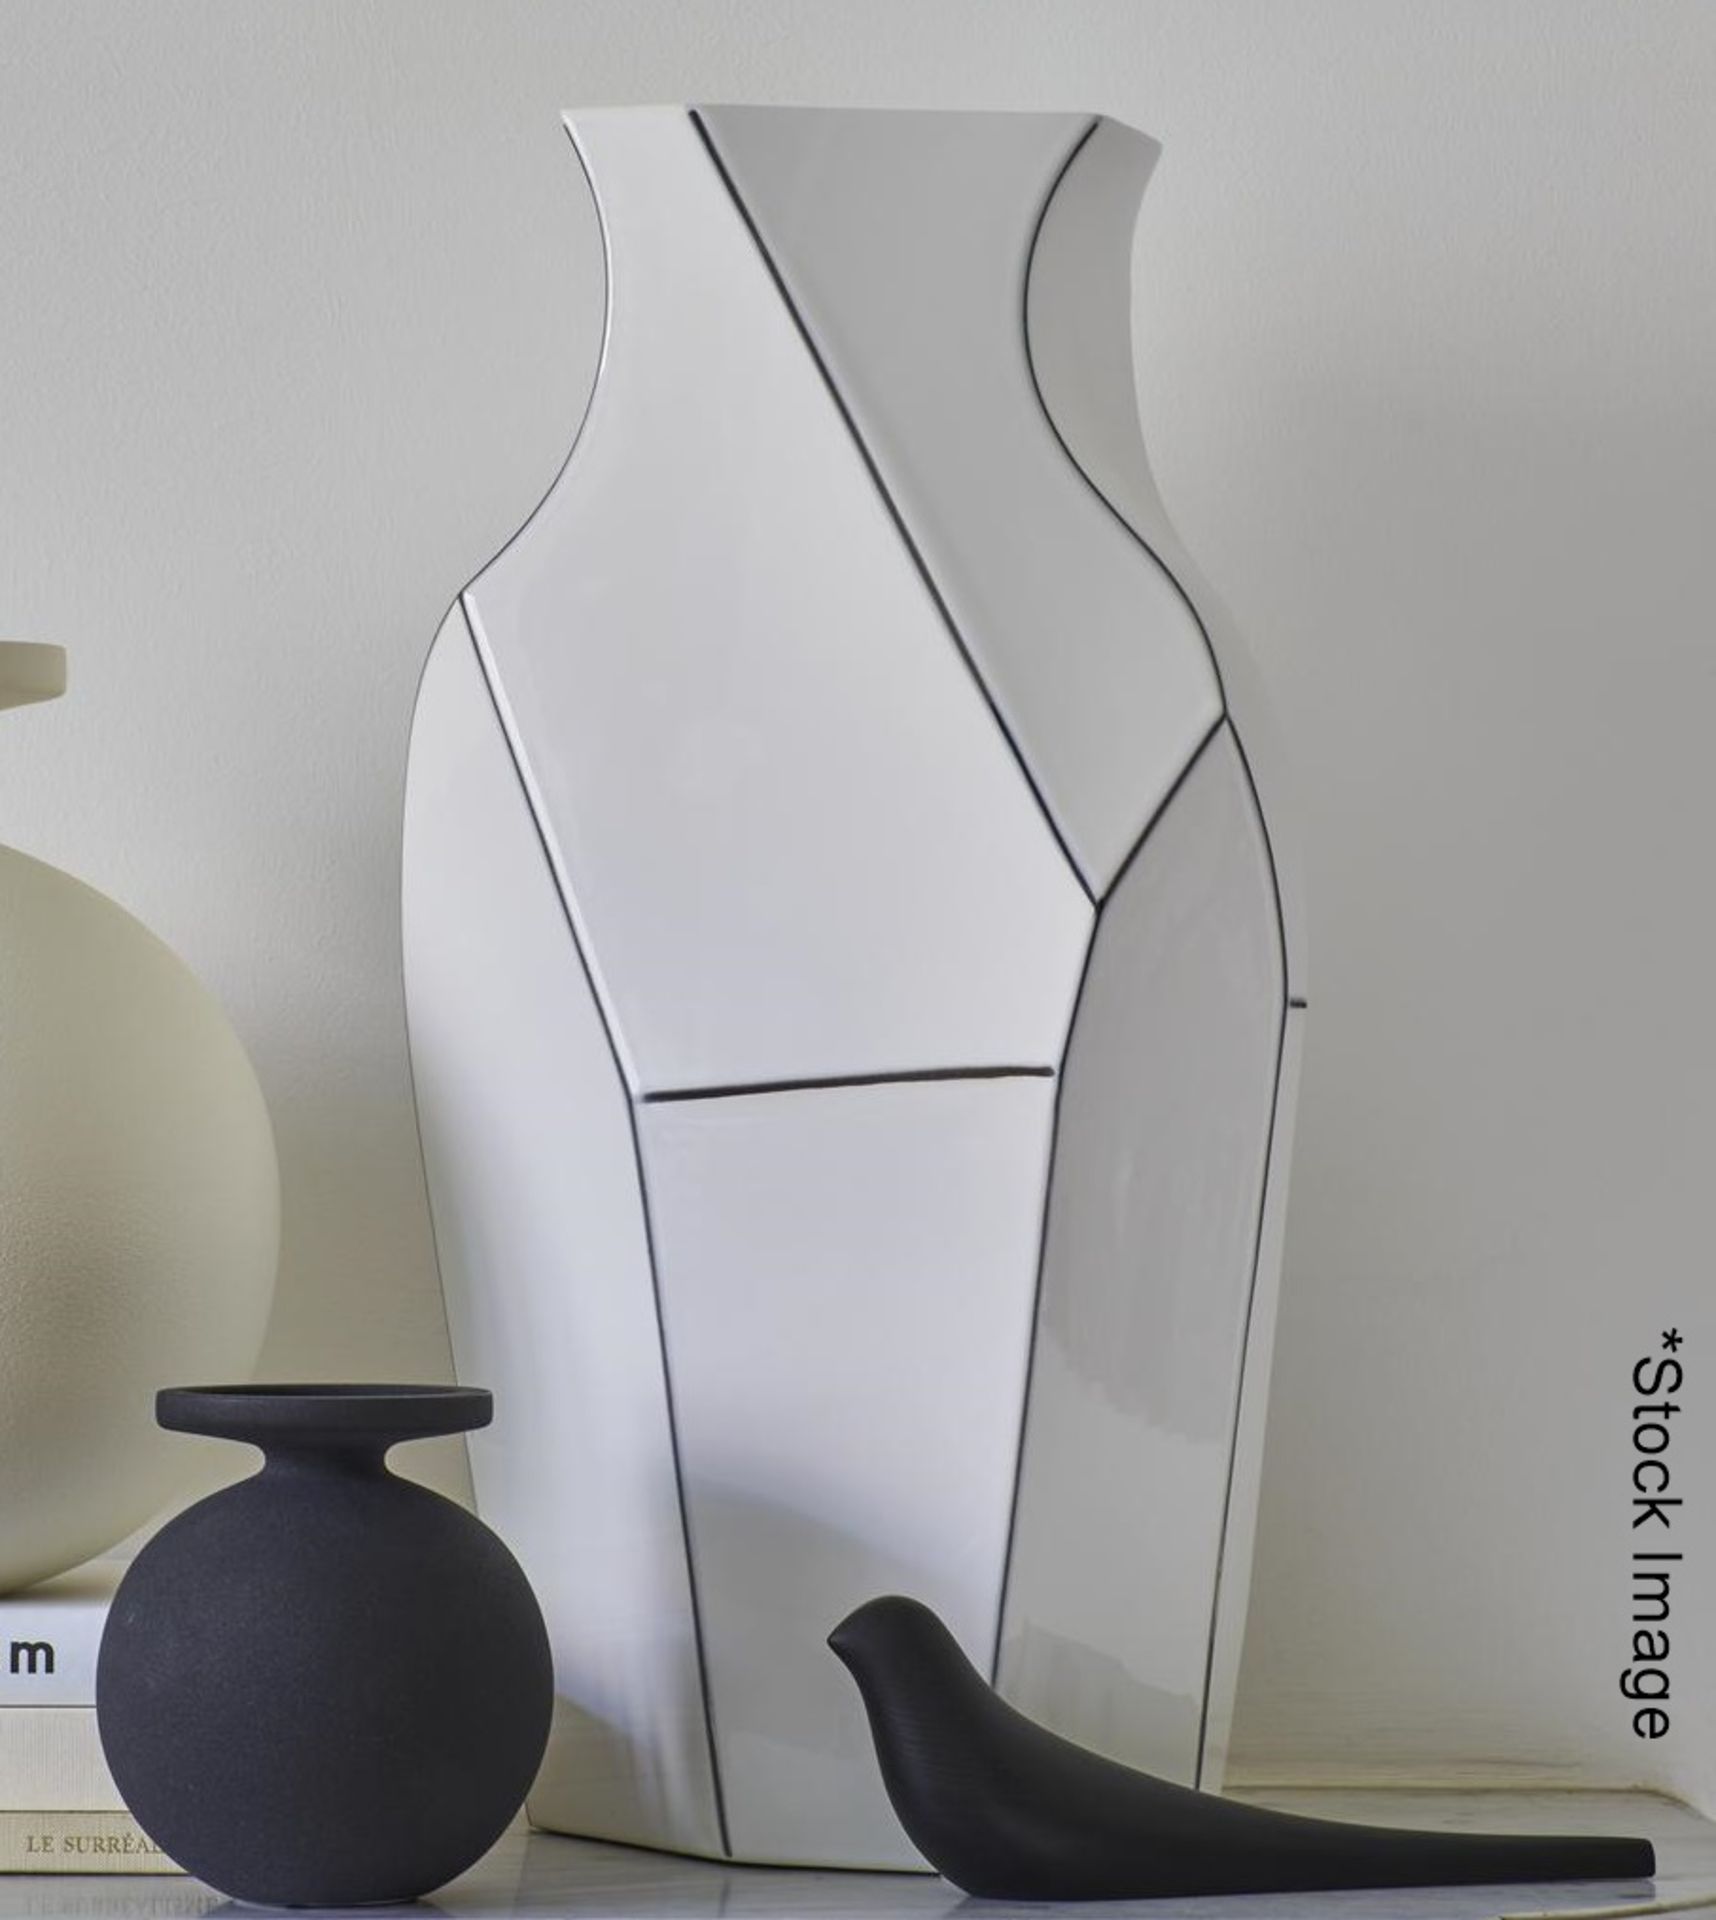 1 x LIGNE ROSET 'Polygon' Designer 50cm Enamelled & Moulded Earthenware Vase - RRP £137.00